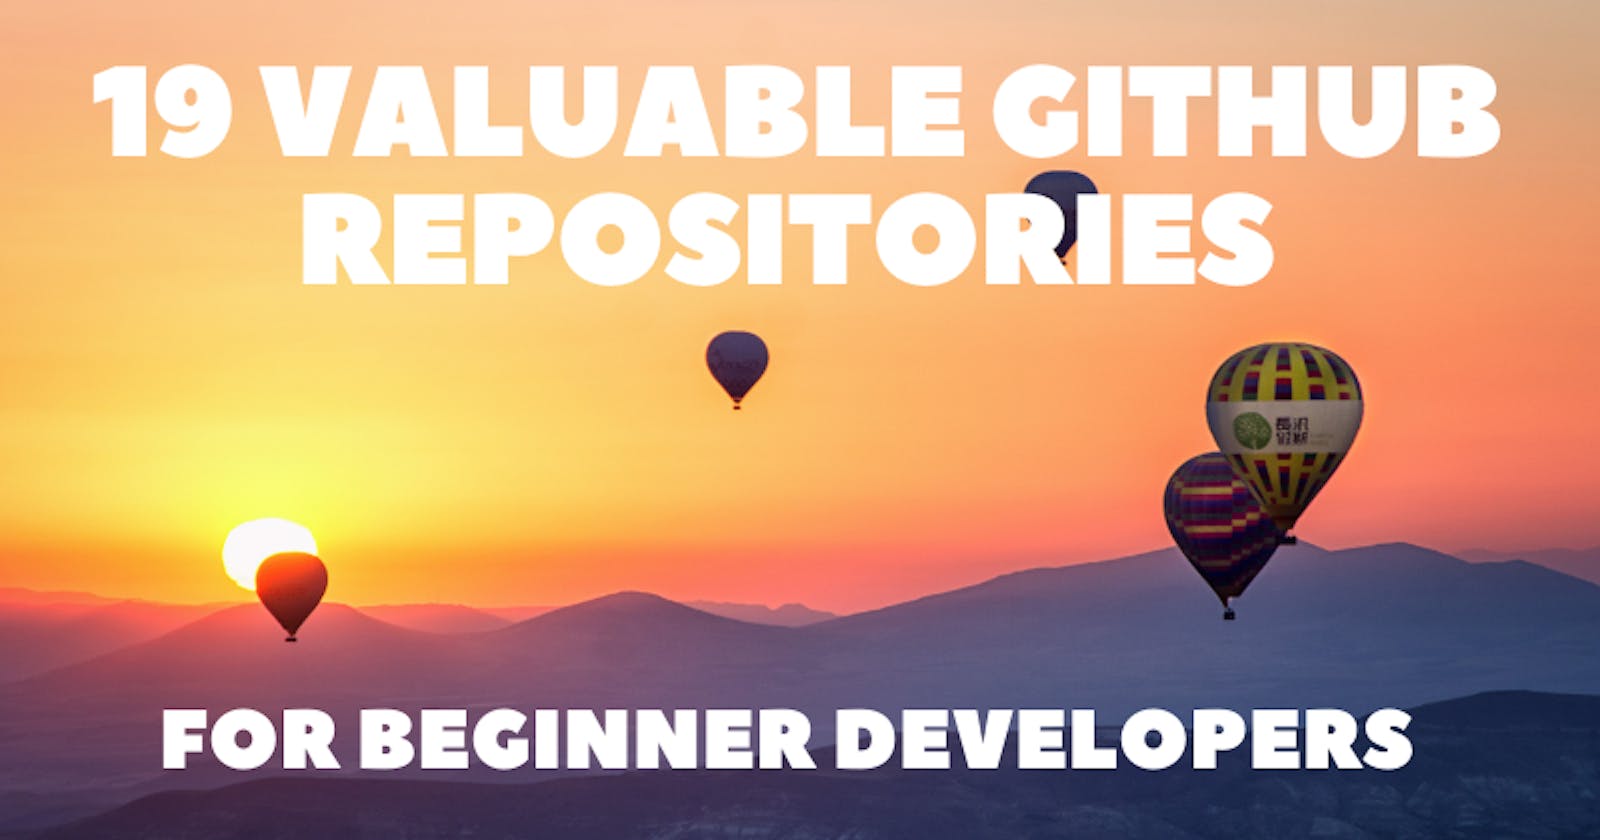 19 Valuable GitHub Repositories for Beginner Developers 📚✨